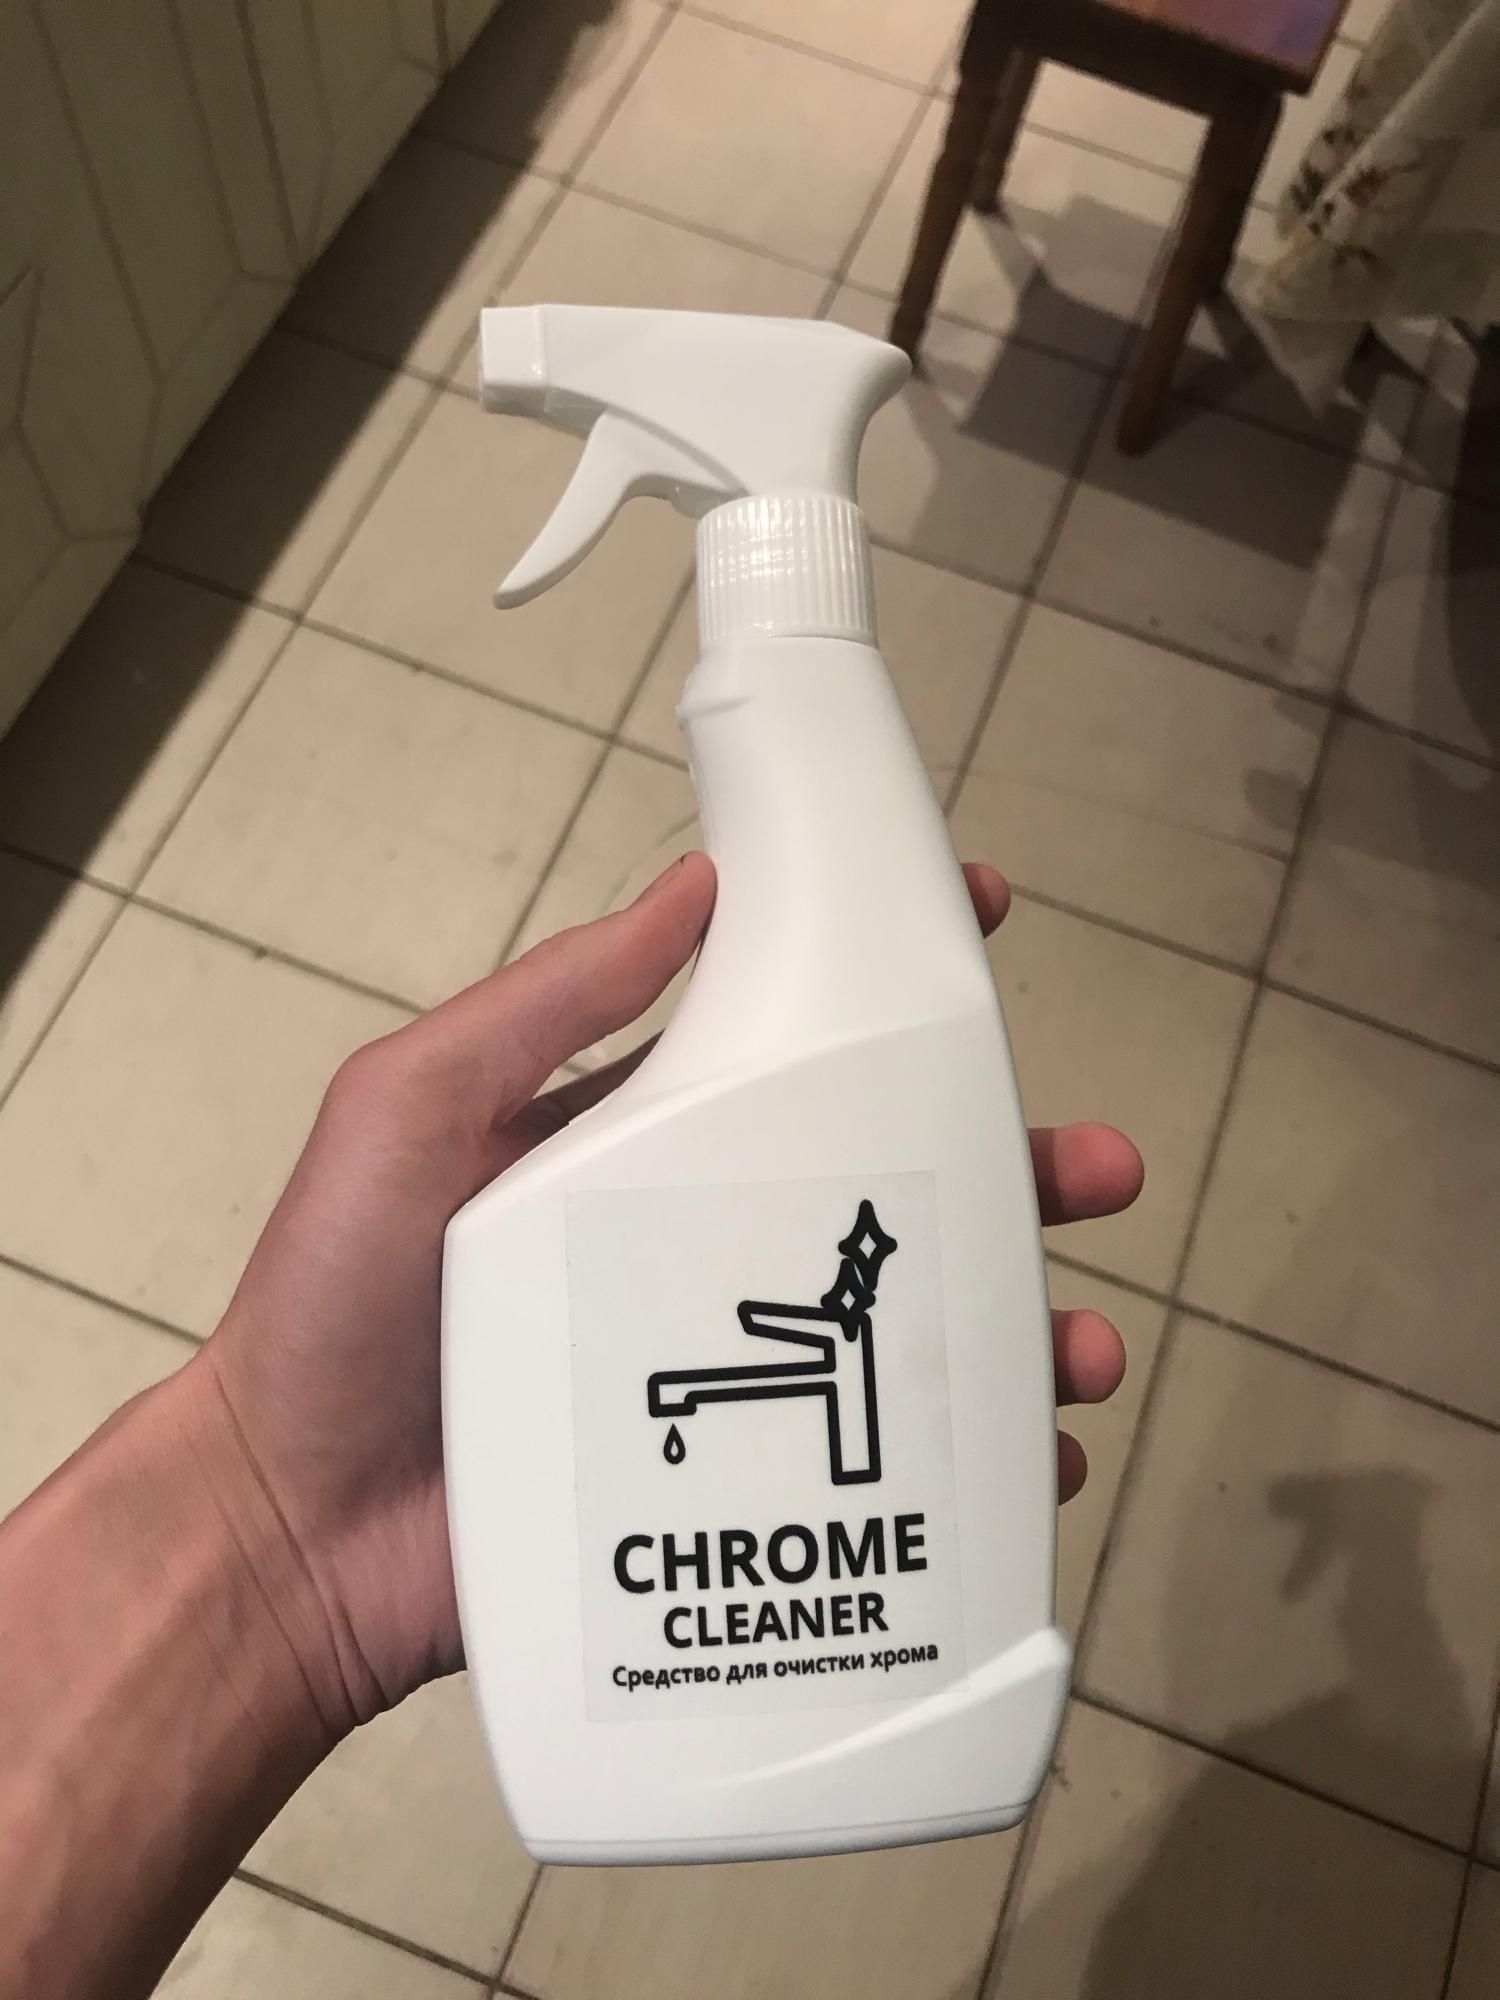 Chrome cleaner